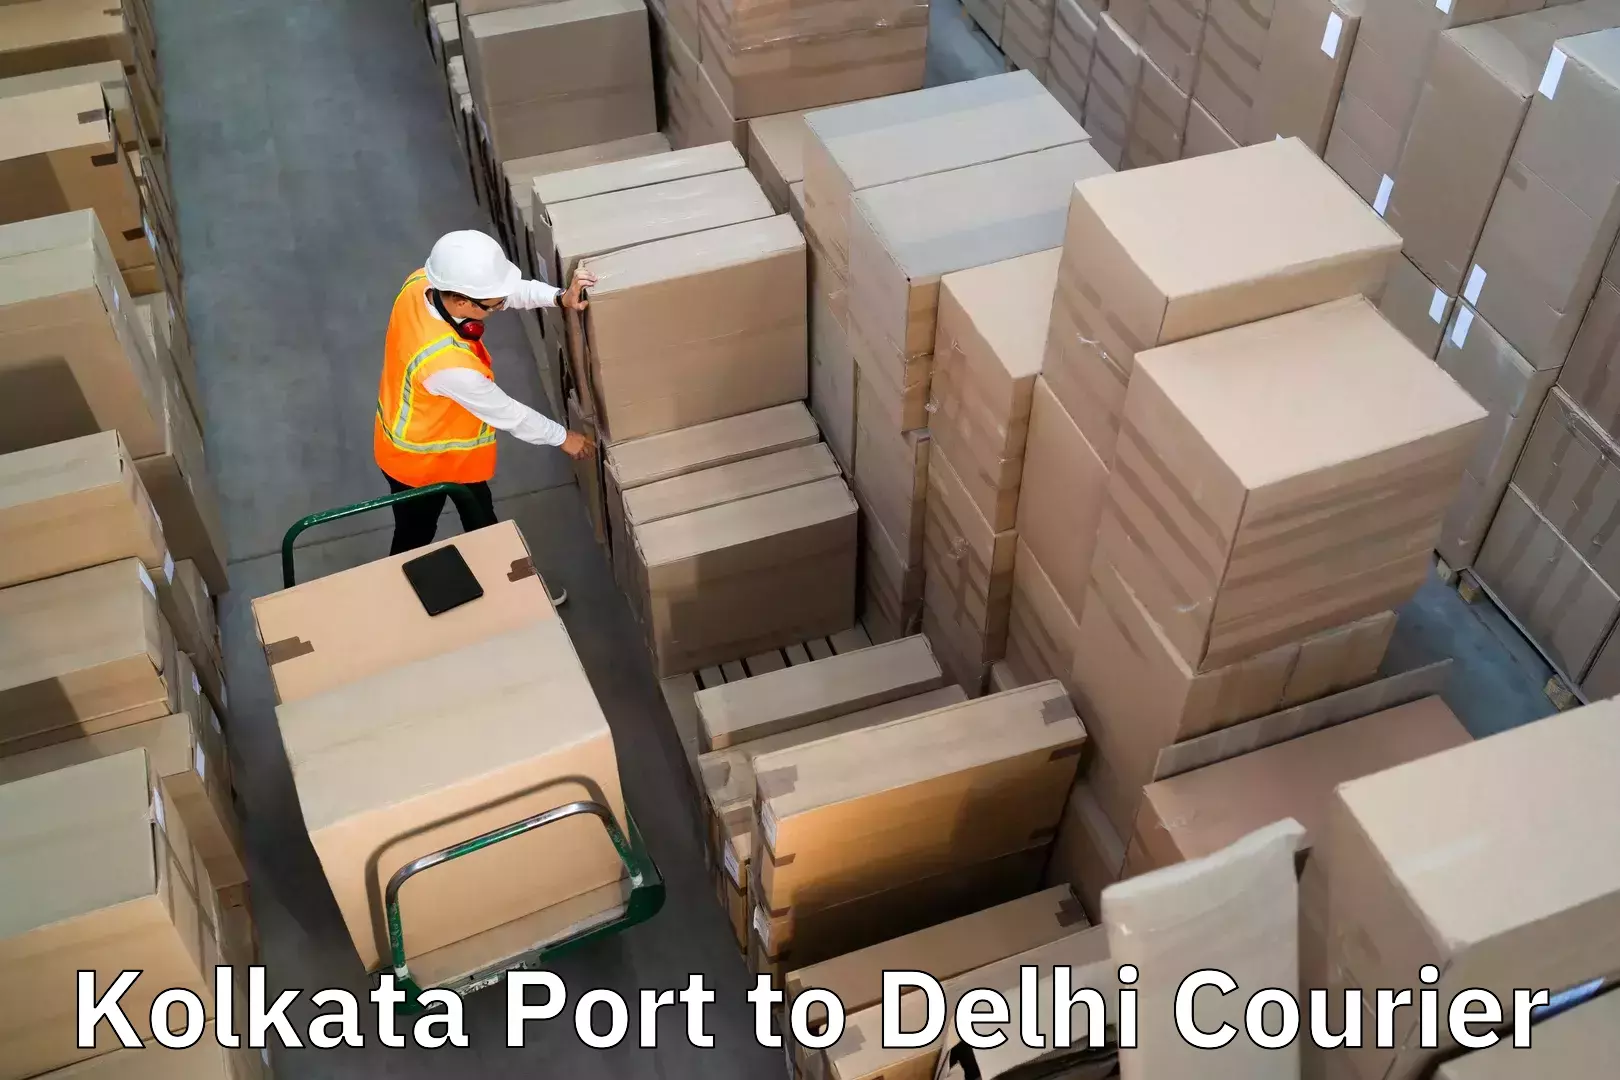 Baggage transport network Kolkata Port to Burari